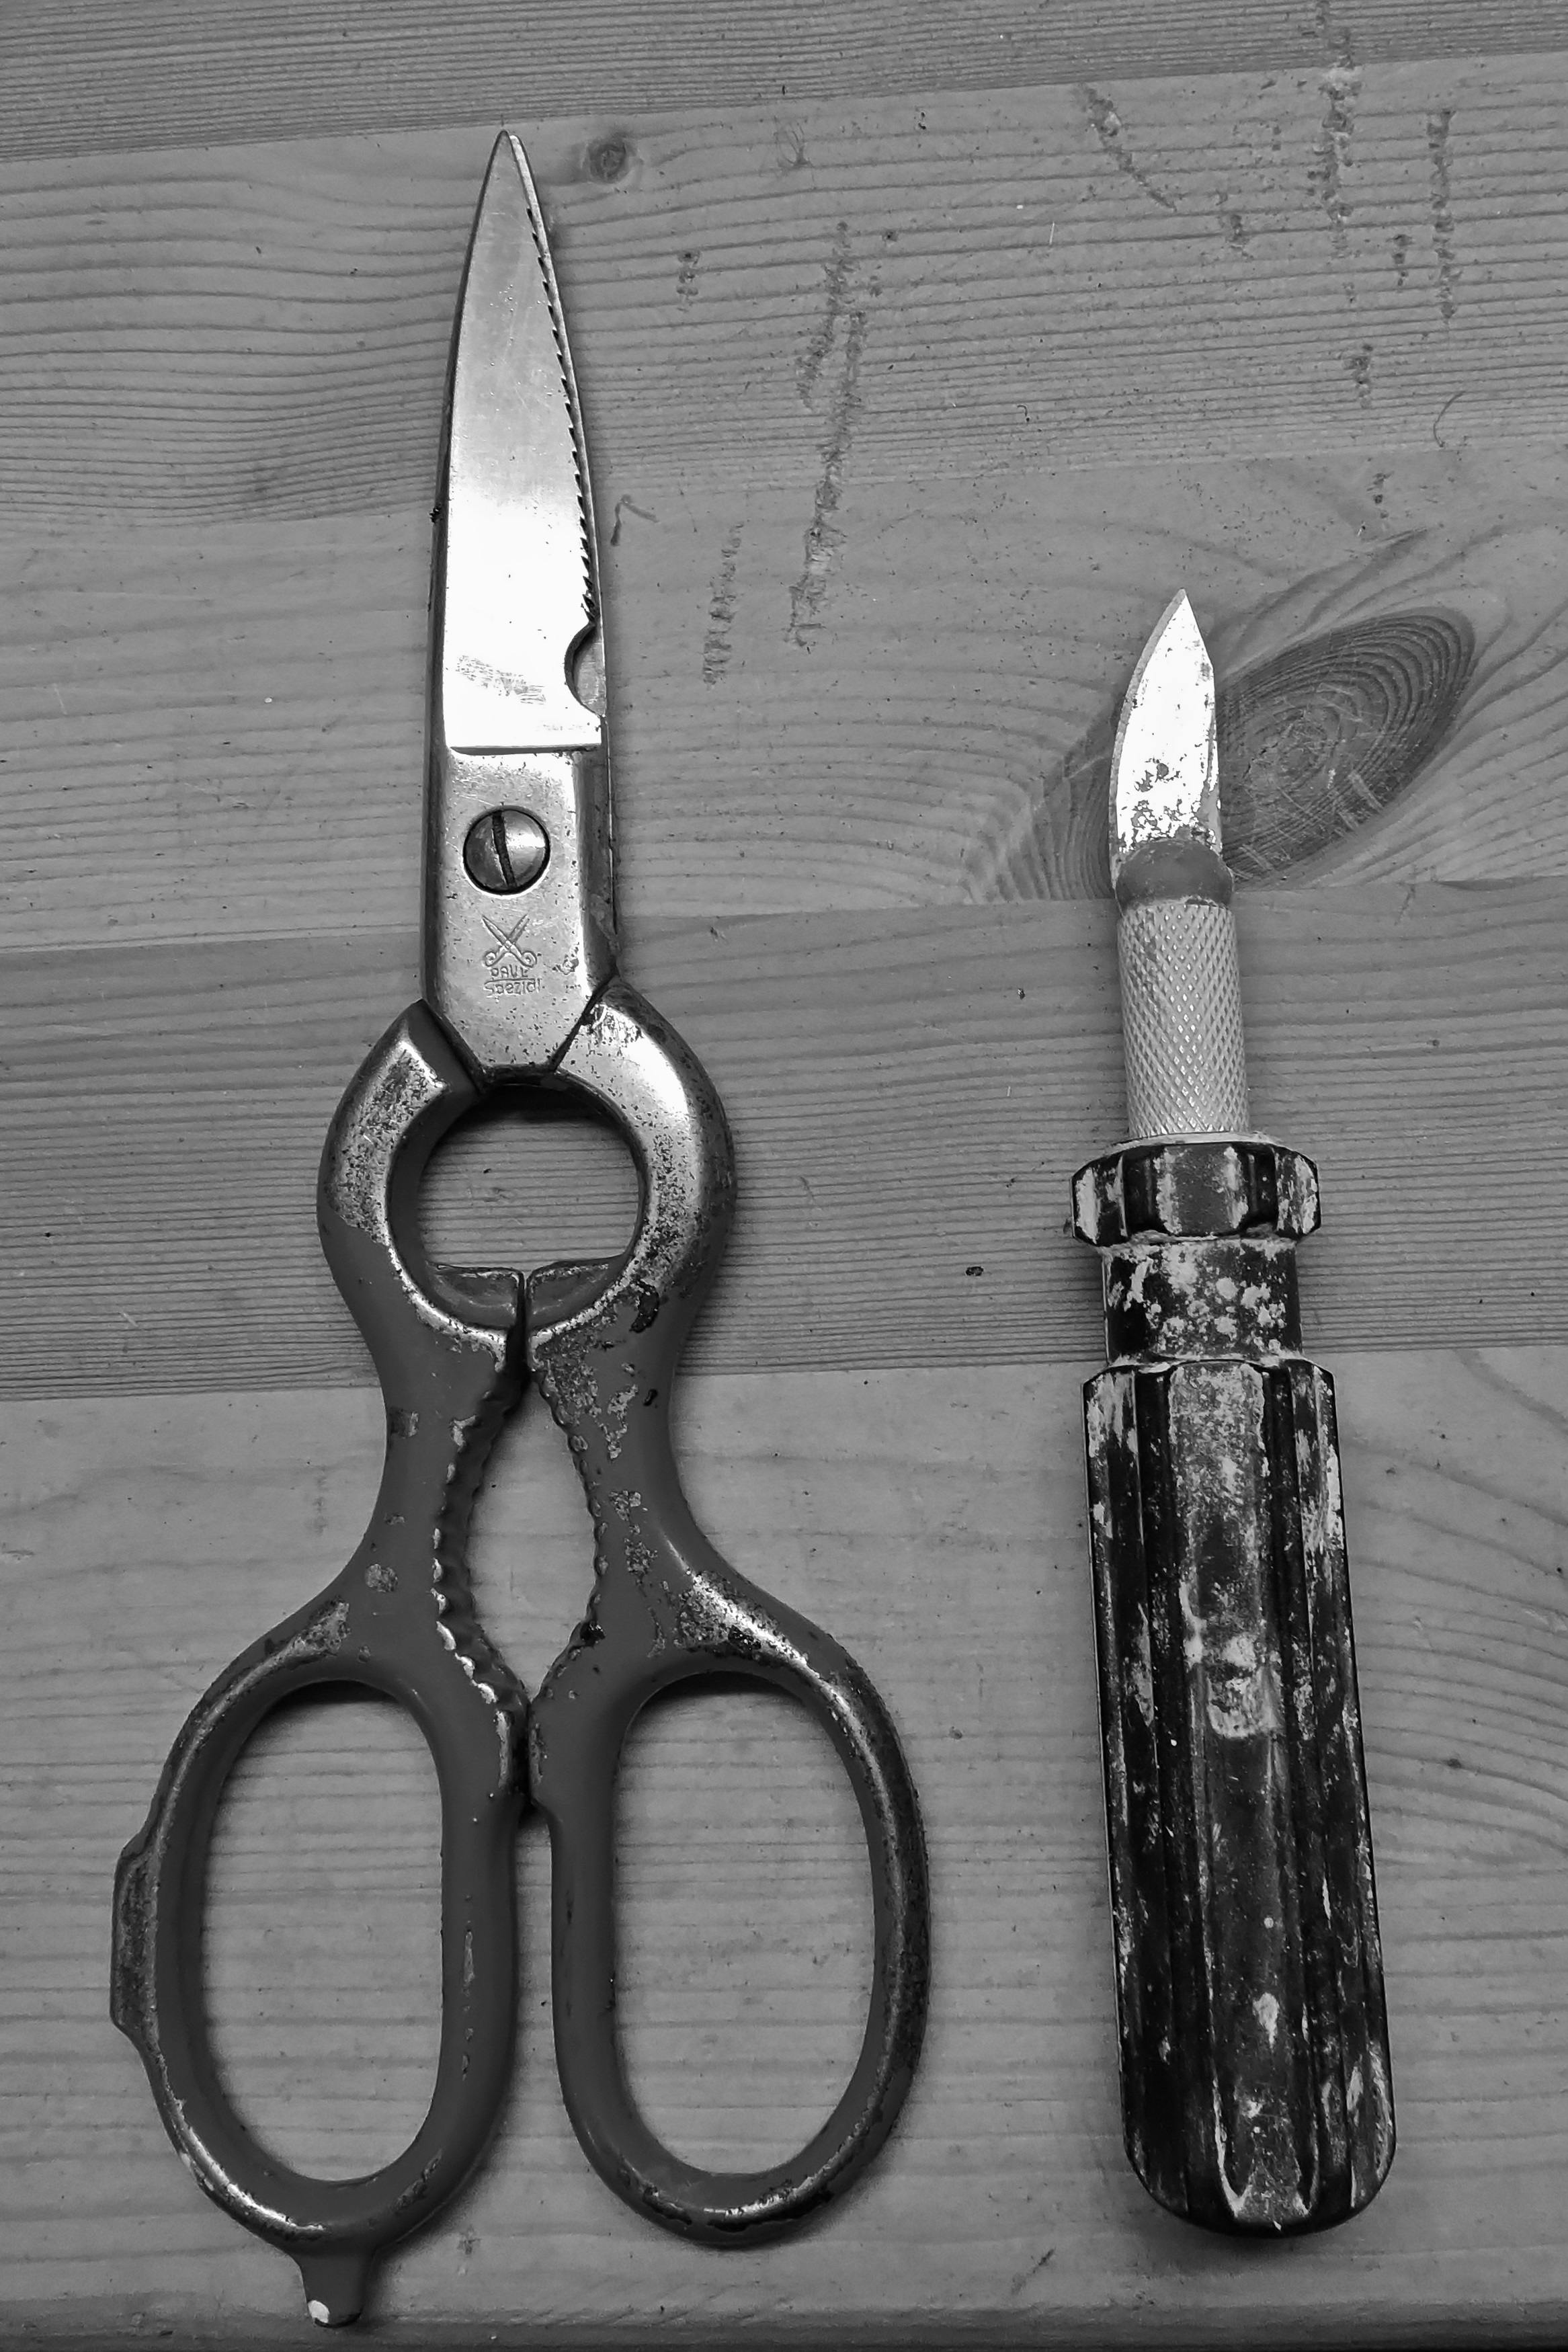 Free stock photo of scissors, tools